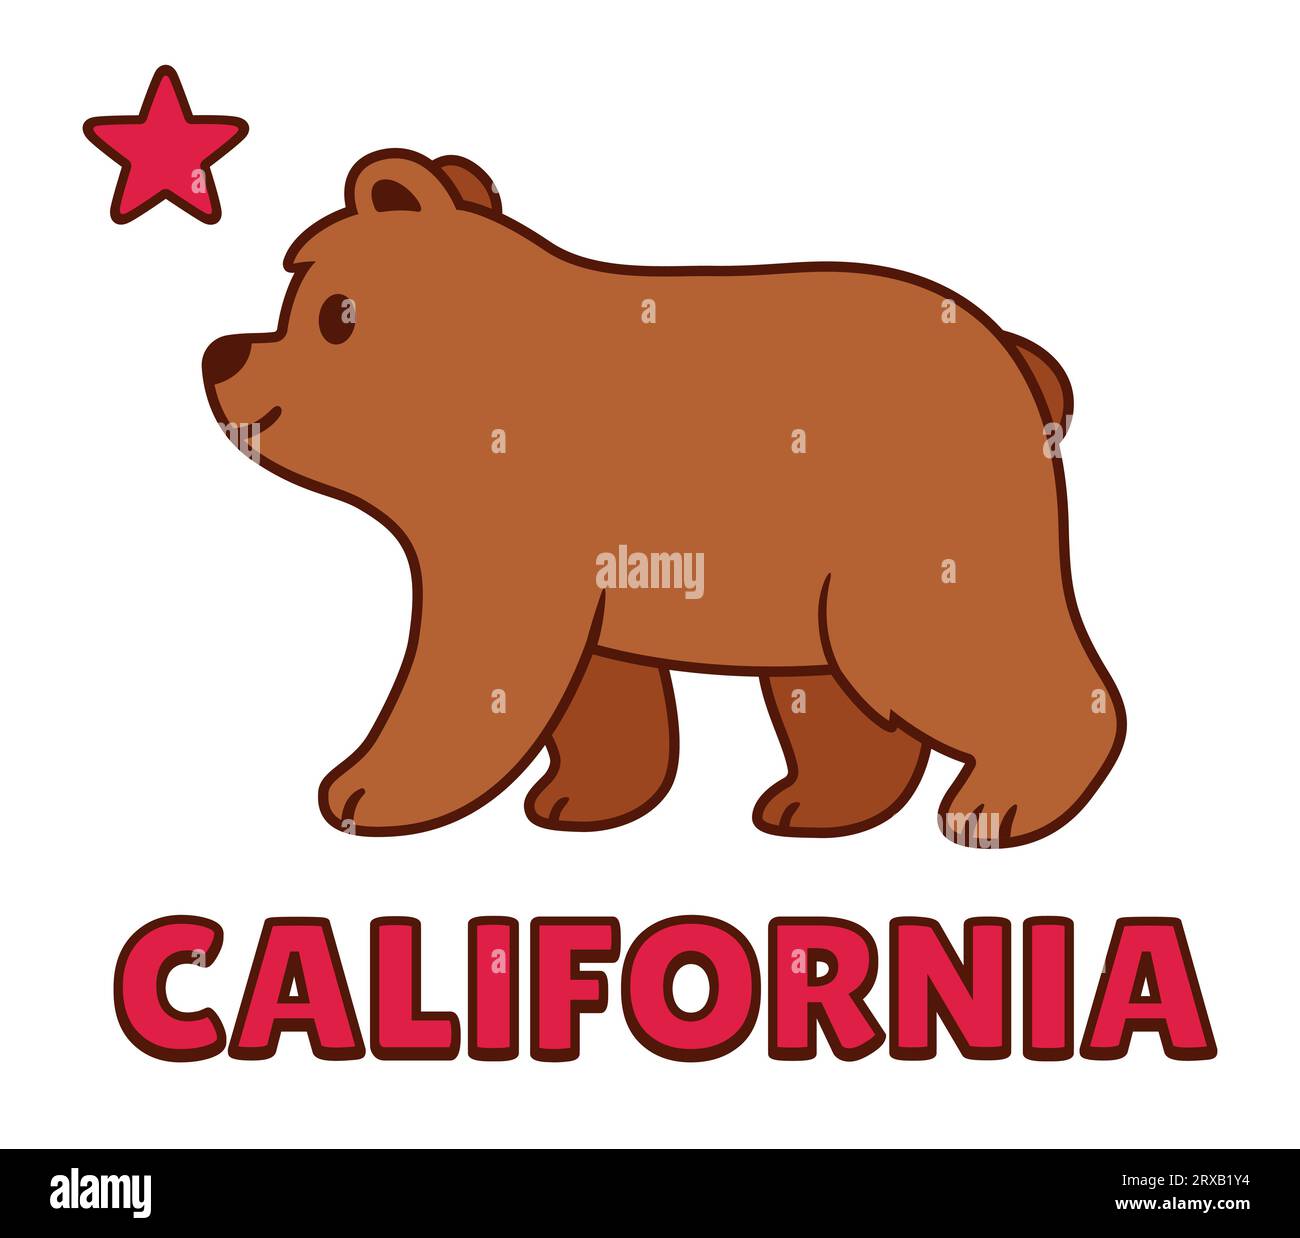 Stilisierte kalifornische Flagge mit niedlichem Karikaturbär. Braune Grizzlybärzeichnung mit rotem Stern und Text „California“. Vektorillustration. Stock Vektor